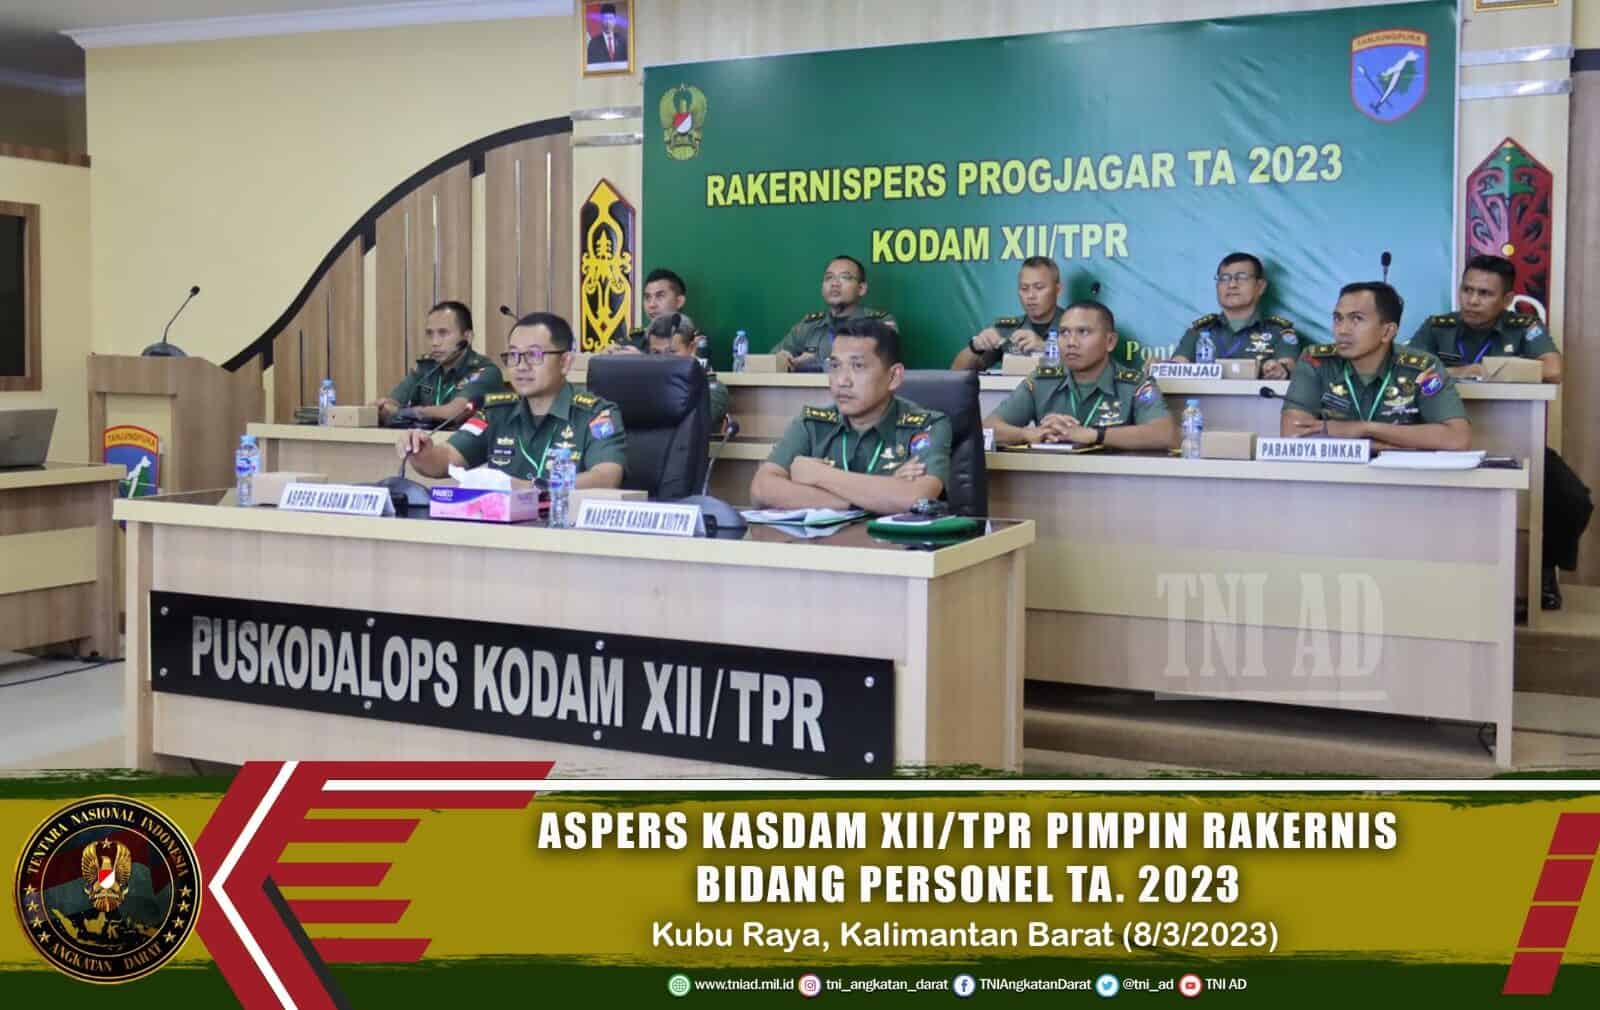 Aspers Kasdam XII/Tpr Pimpin Rakernis Bidang Personel TA 2023.